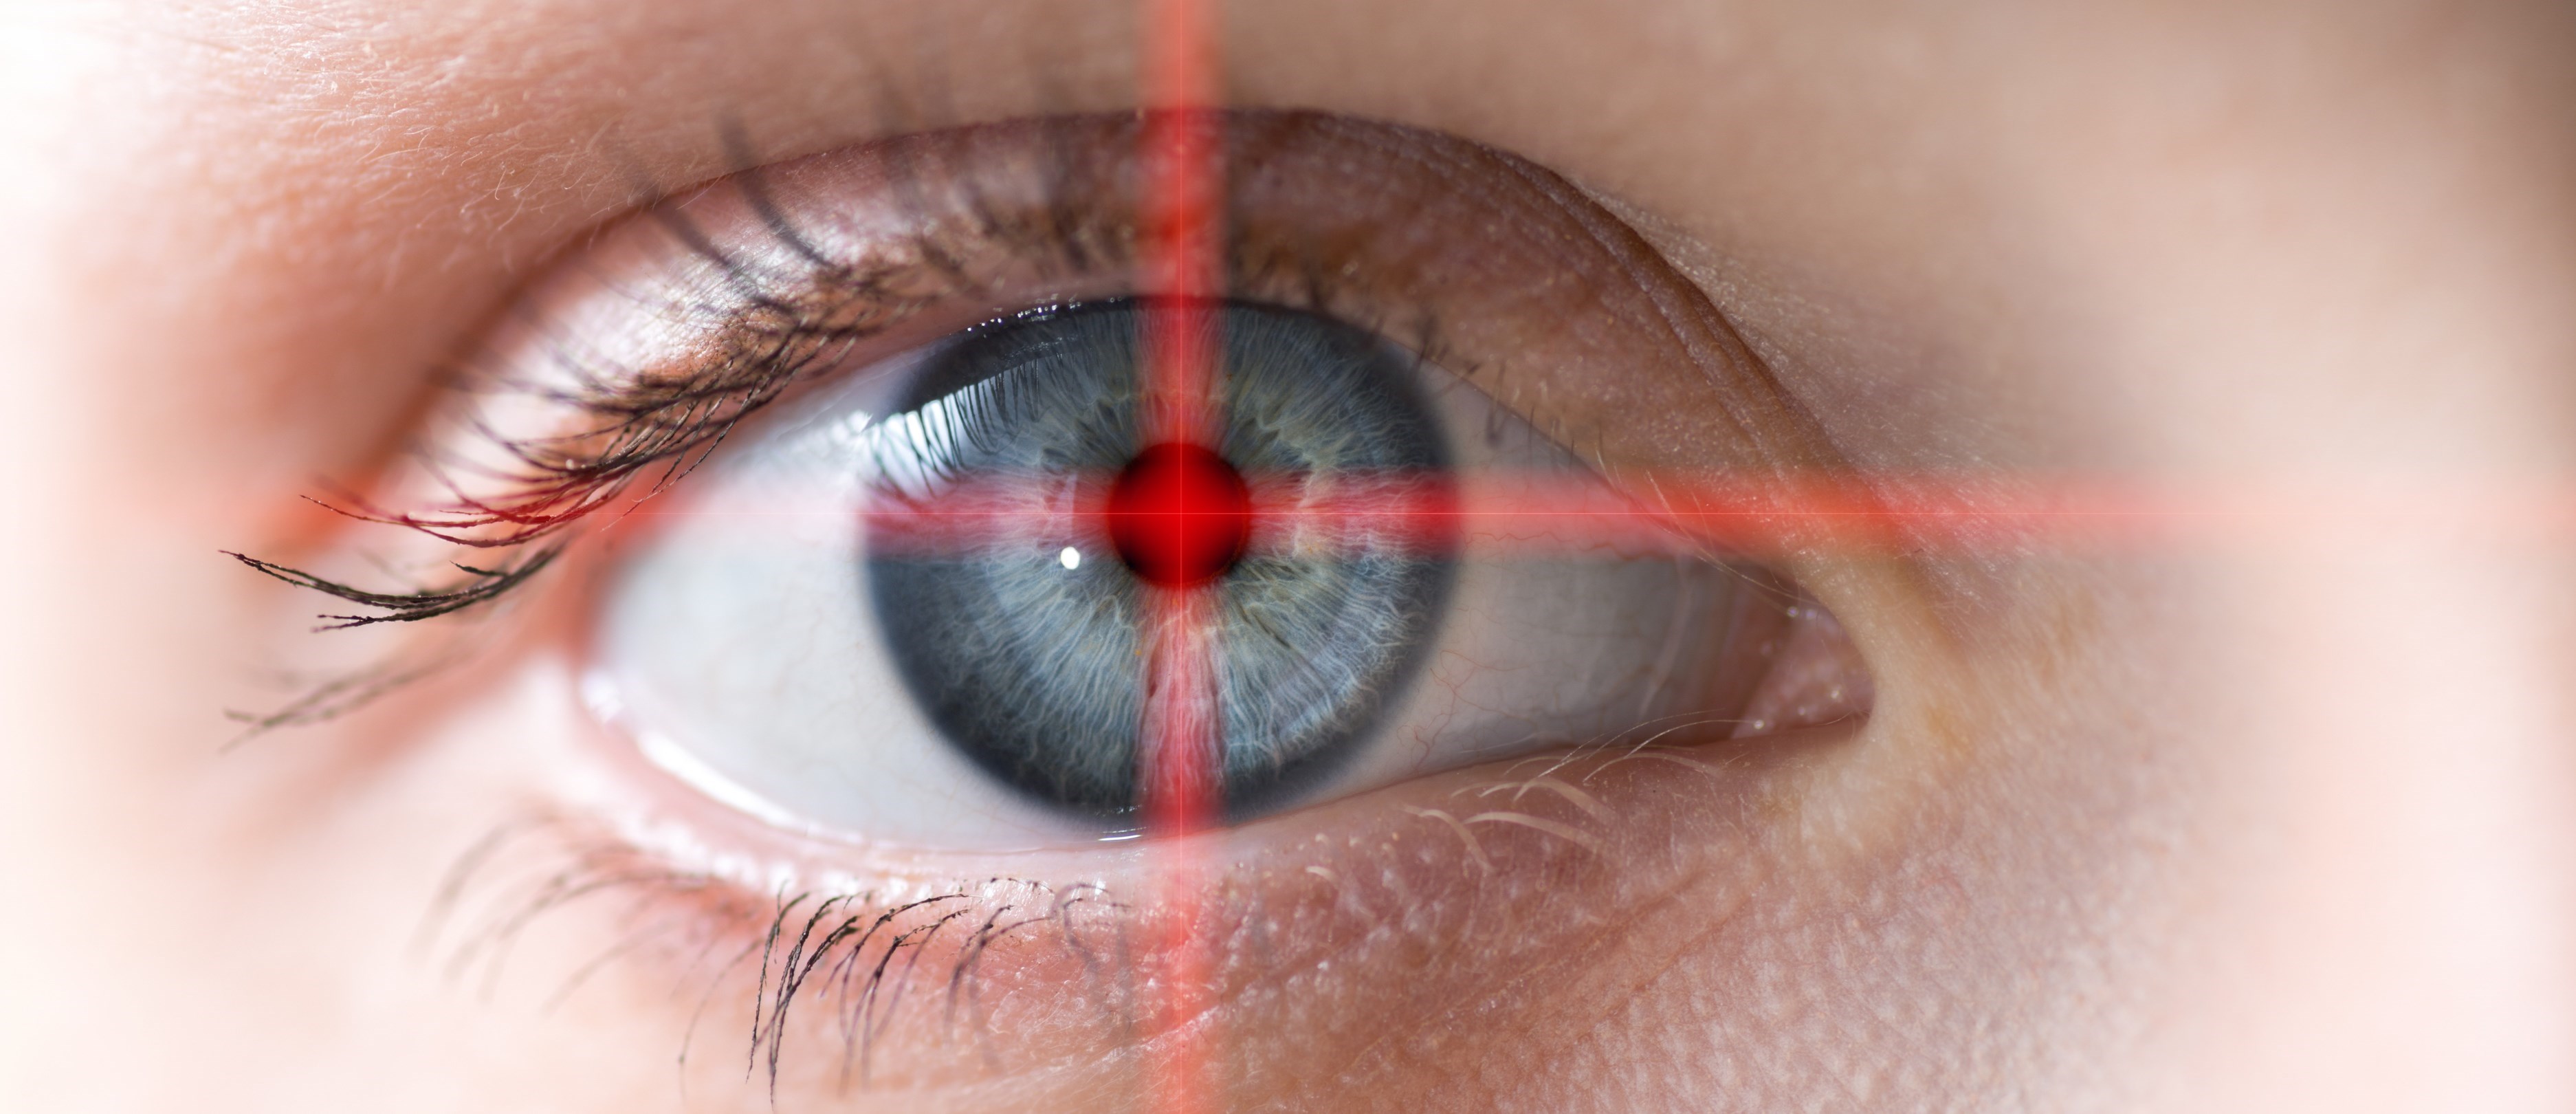 Närbild på ett öga. Från pupillen sprider sig ett rött kryss som fortsätter ut över hela bilden.